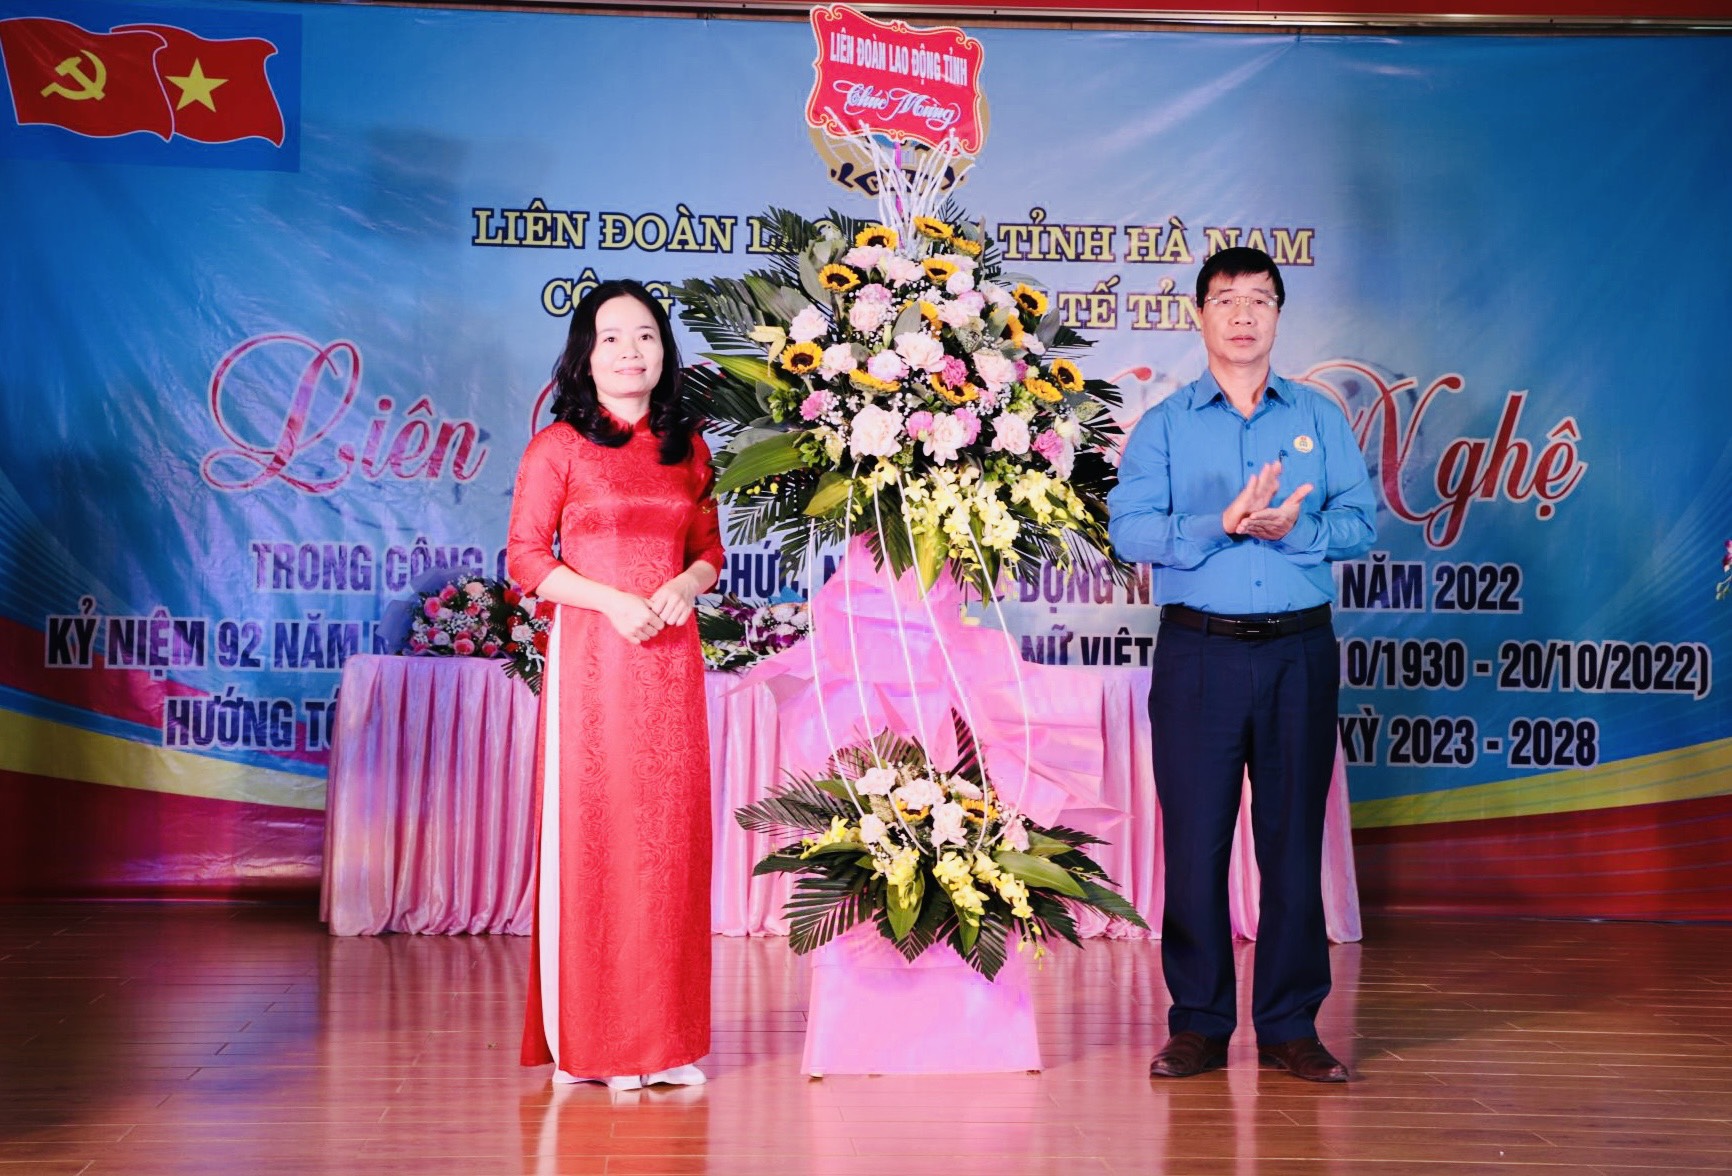 2 Ông Trịnh Văn Bừng - Uỷ viên Ban chấp hành Tổng Liên đoàn lao động Việt Nam, Tỉnh uỷ viên, Chủ tịch Liên đoàn lao động tỉnh tặng hoa chúc mừng Liên hoan.jpg